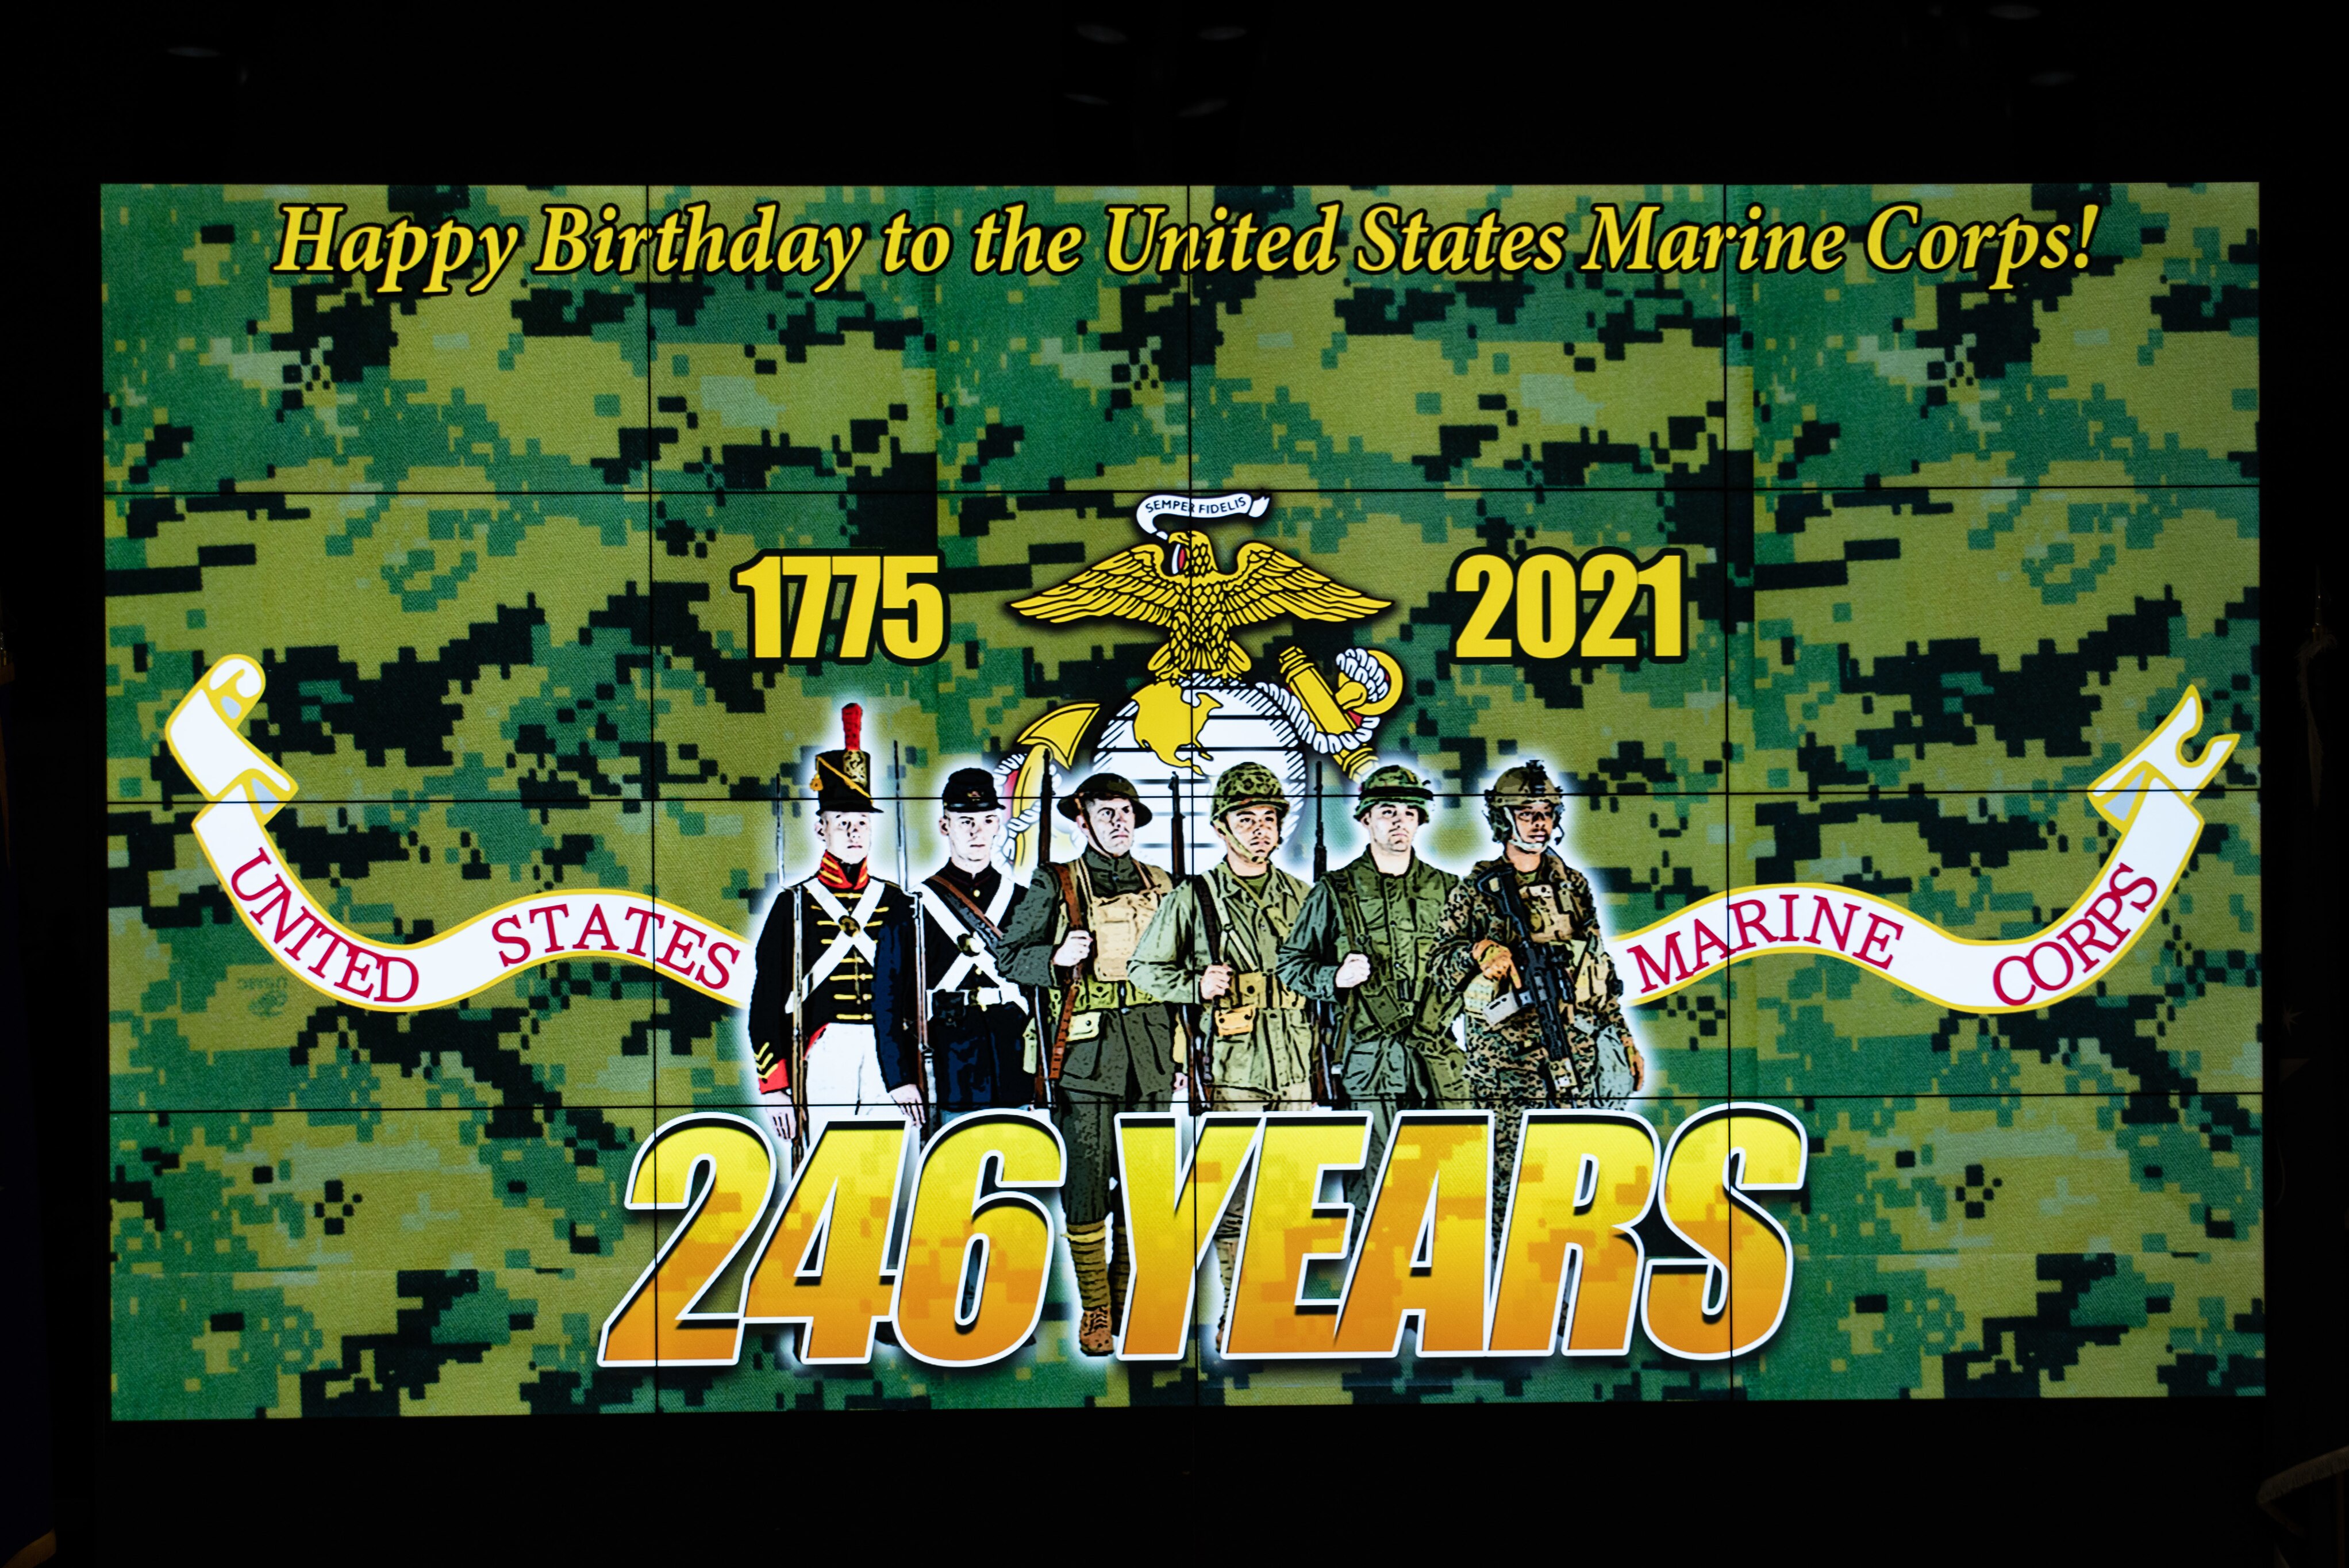 Marine Corps 246th Birthday graphic